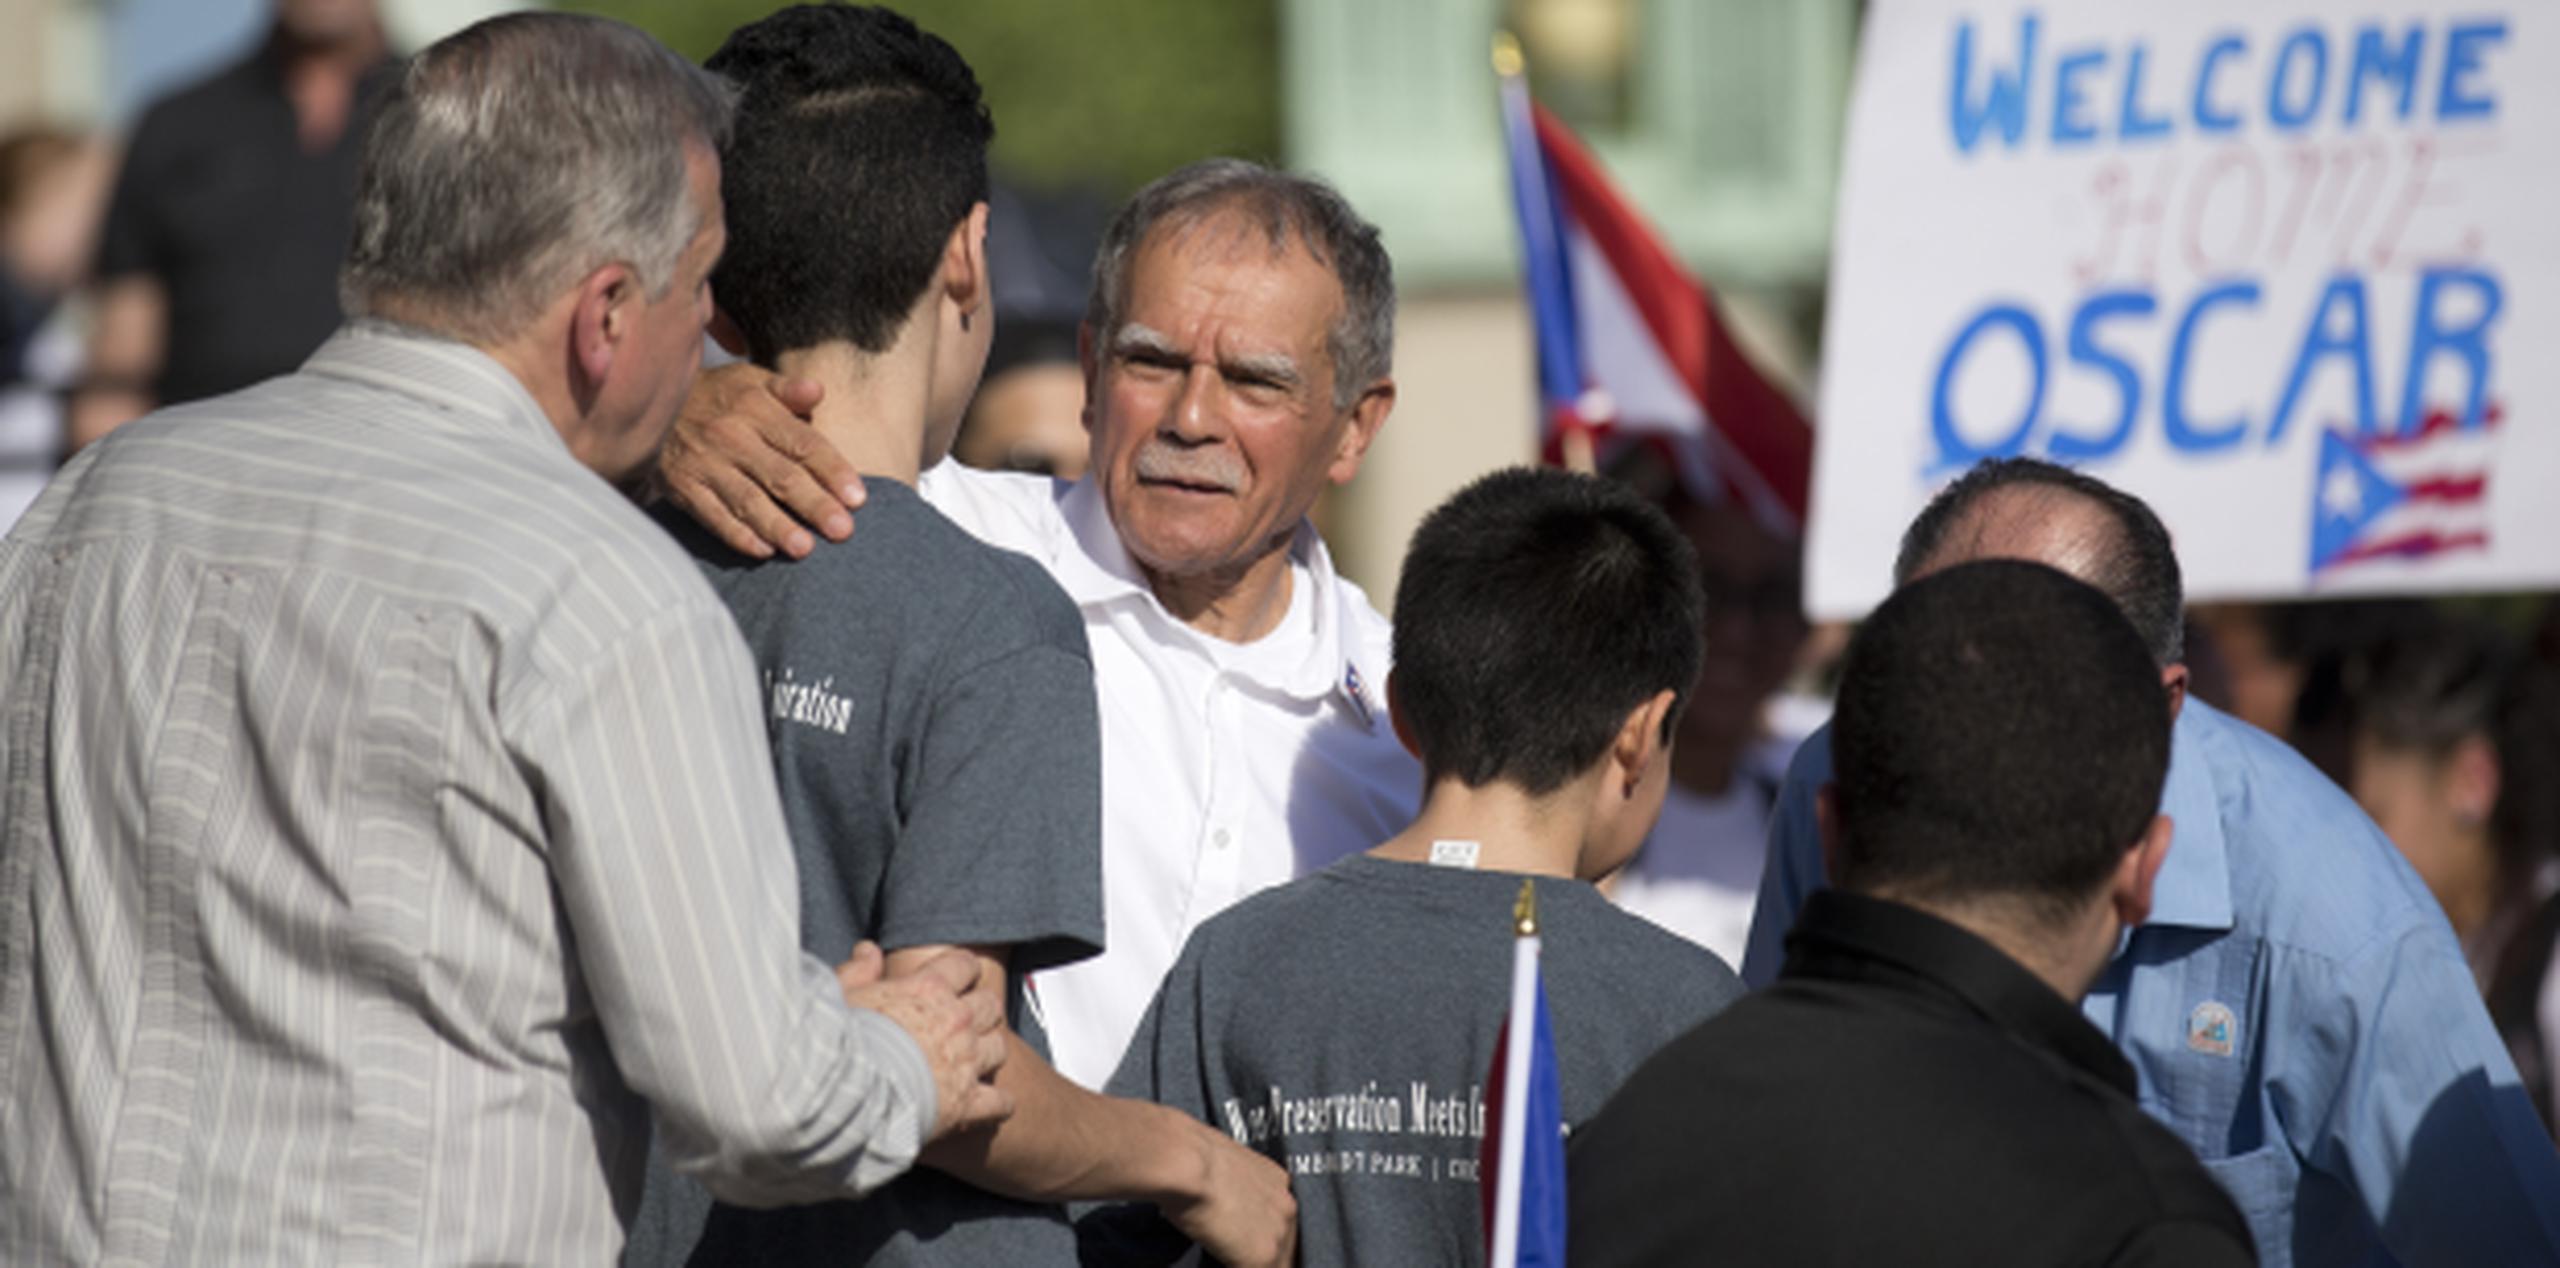 Amigos, familiares y allegados le dieron la bienvenida ayer a Oscar López Rivera en Chicago. (teresa.canino@gfrmedia.com)